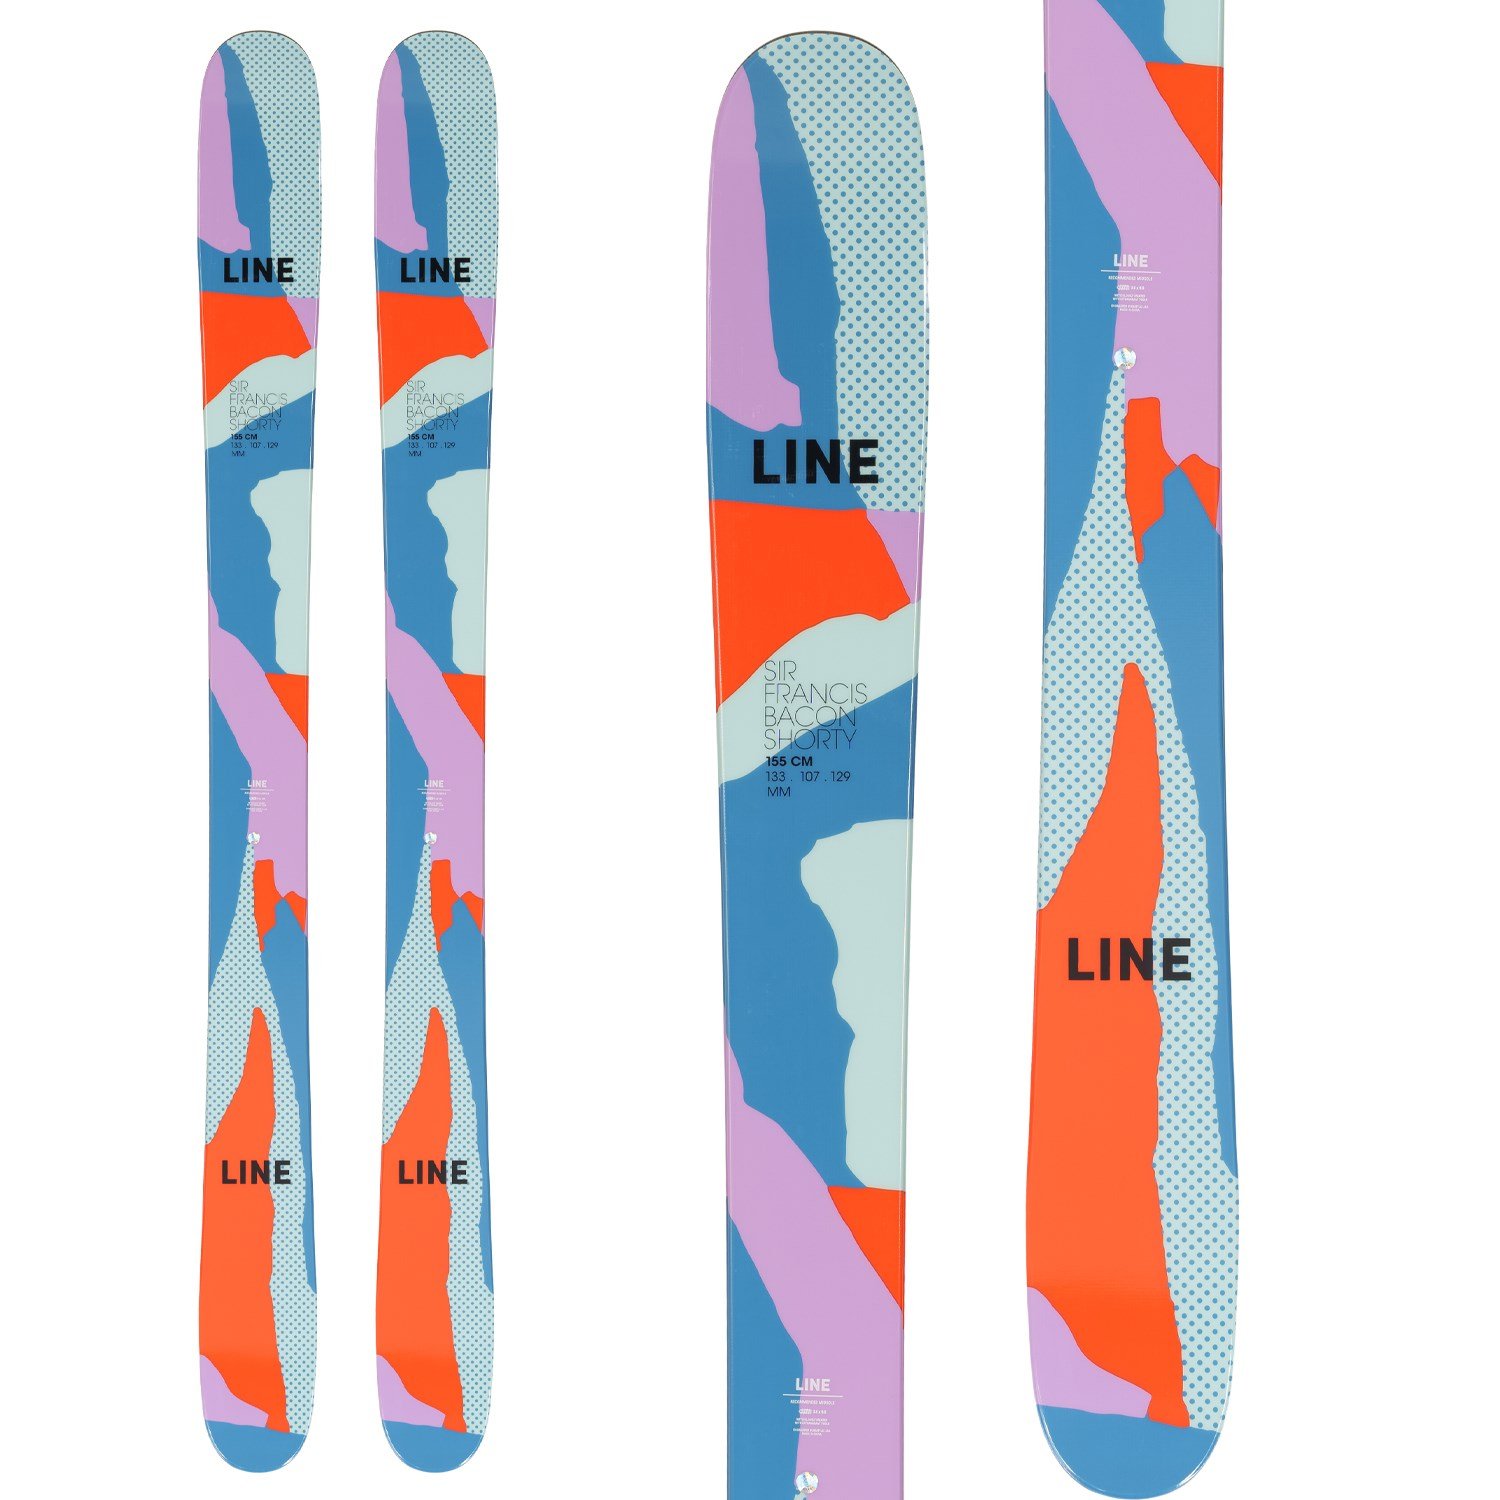 19-20ラインスキーline Sir Francis Bacon 176cm - スキー